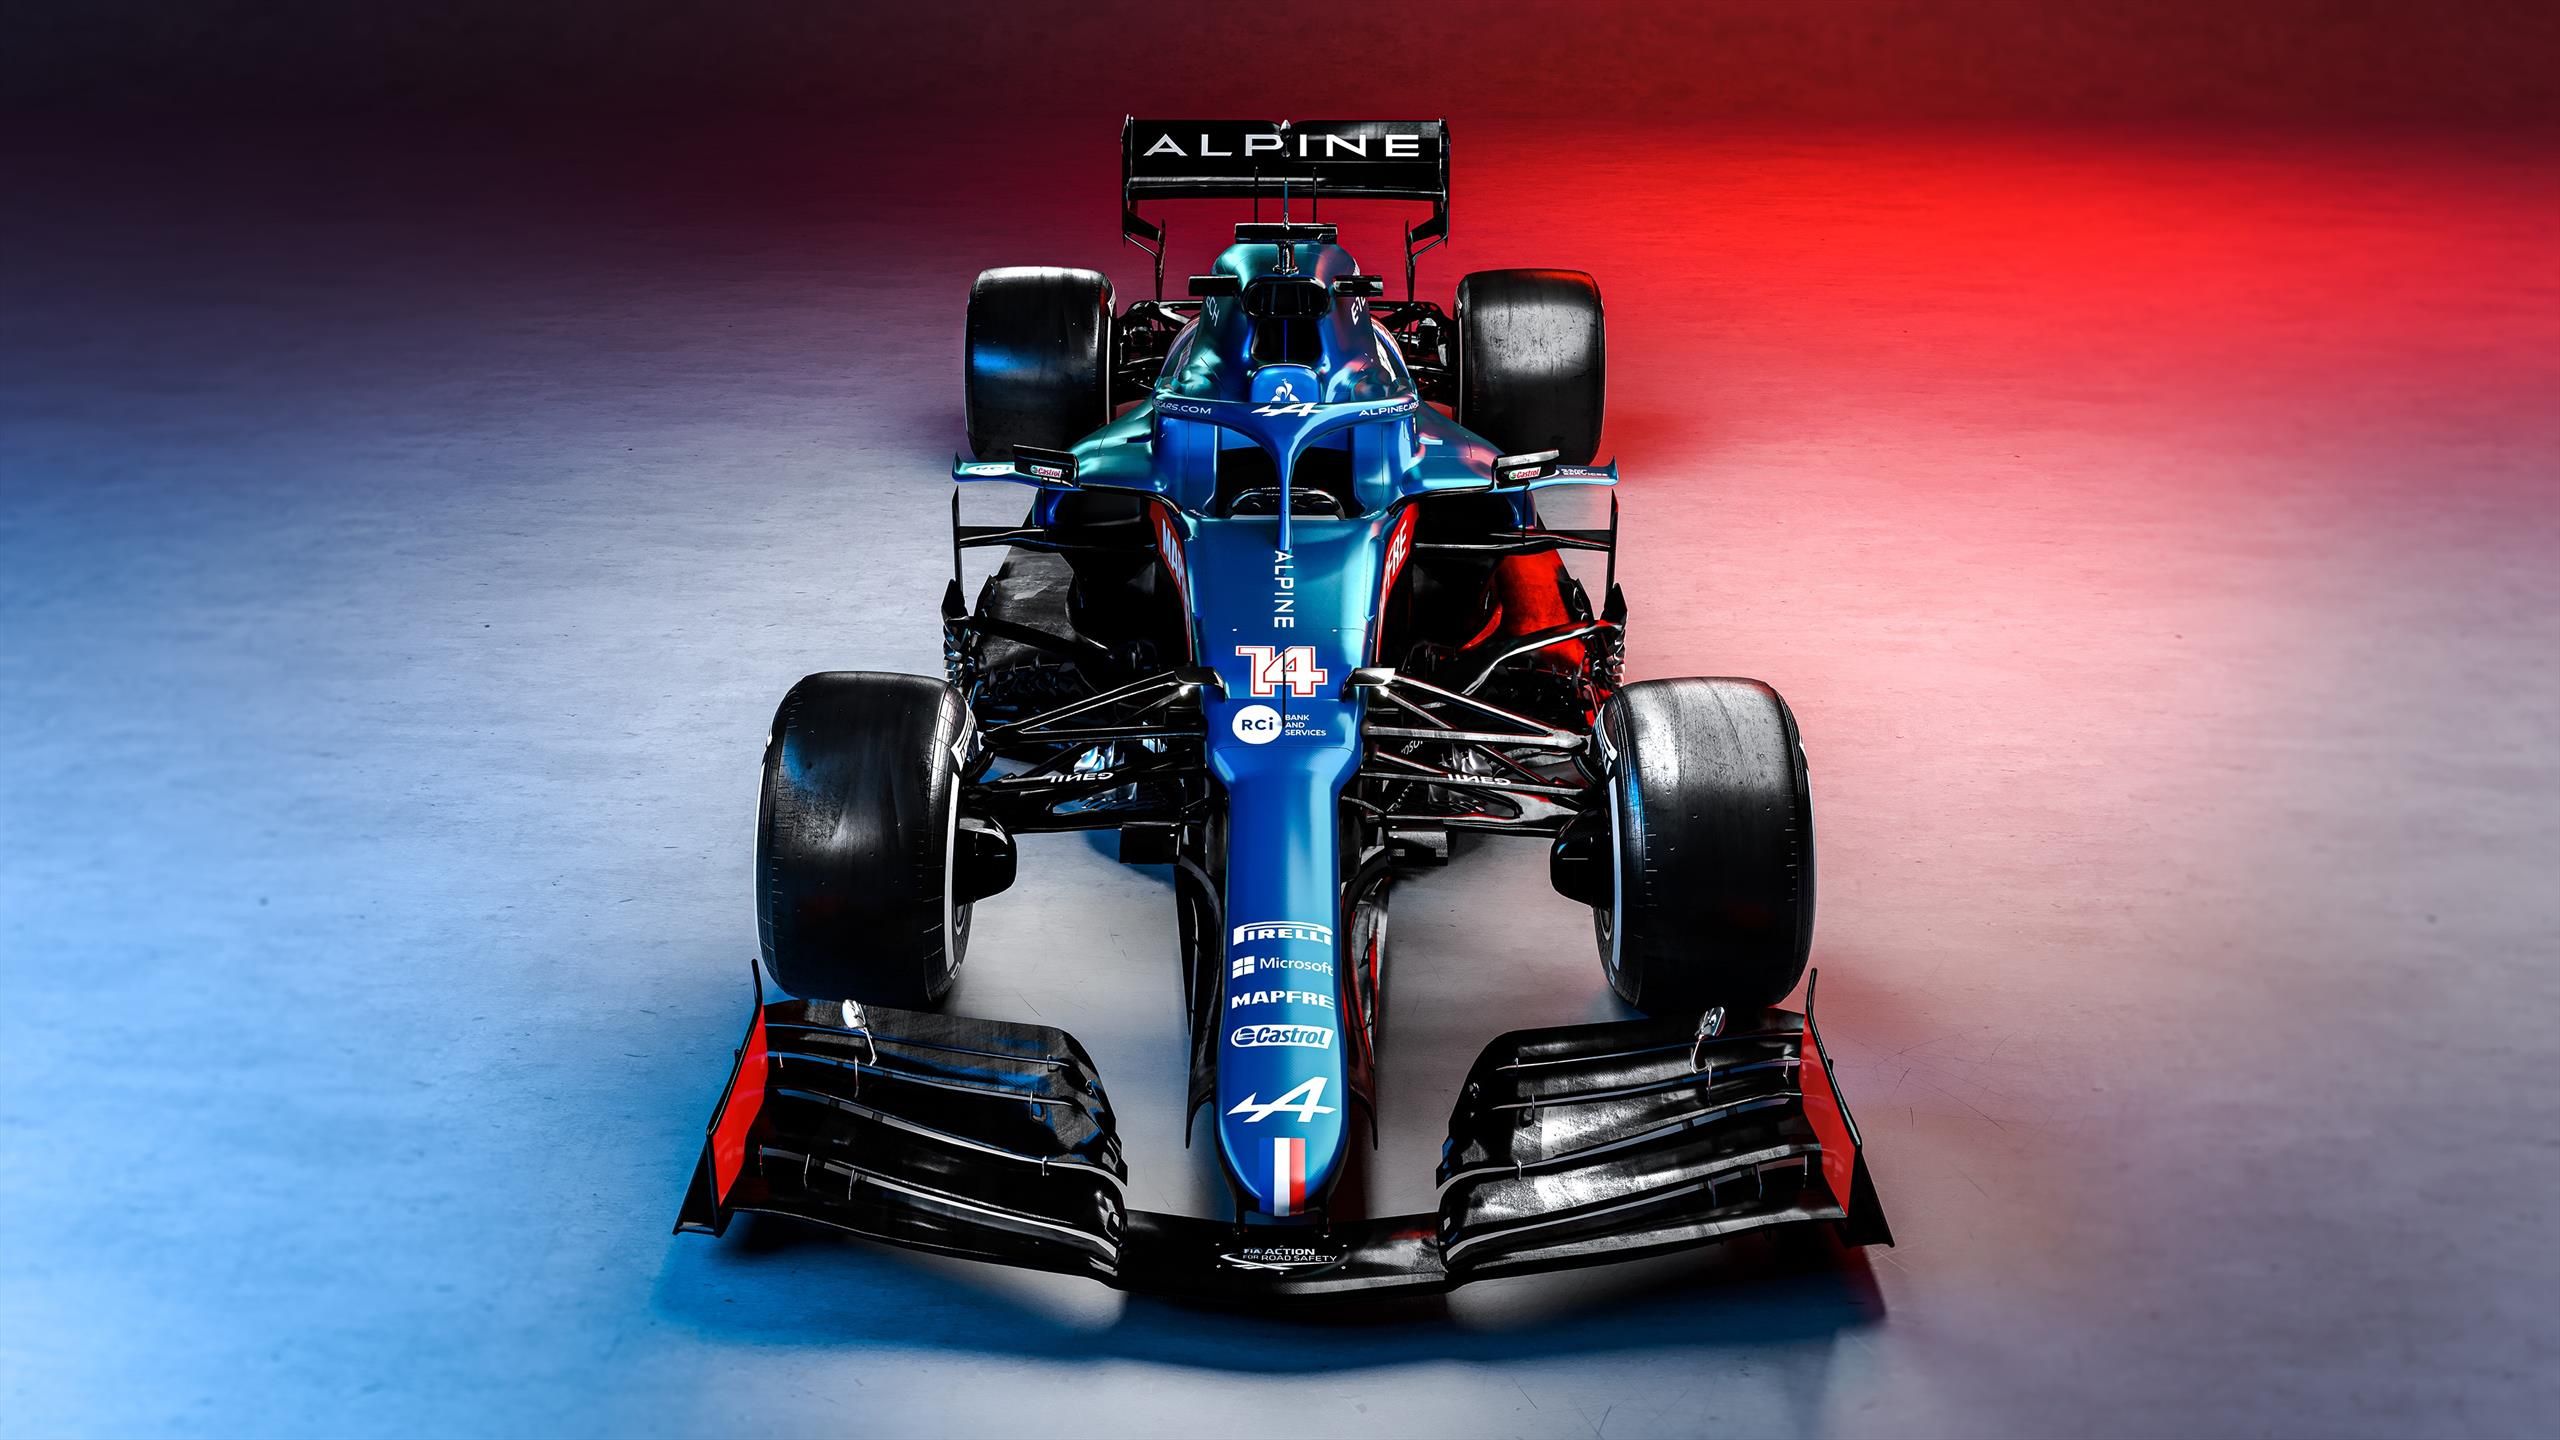 Formule 1 : Alpine dévoile sa nouvelle F1 aujourd'hui, nous serons